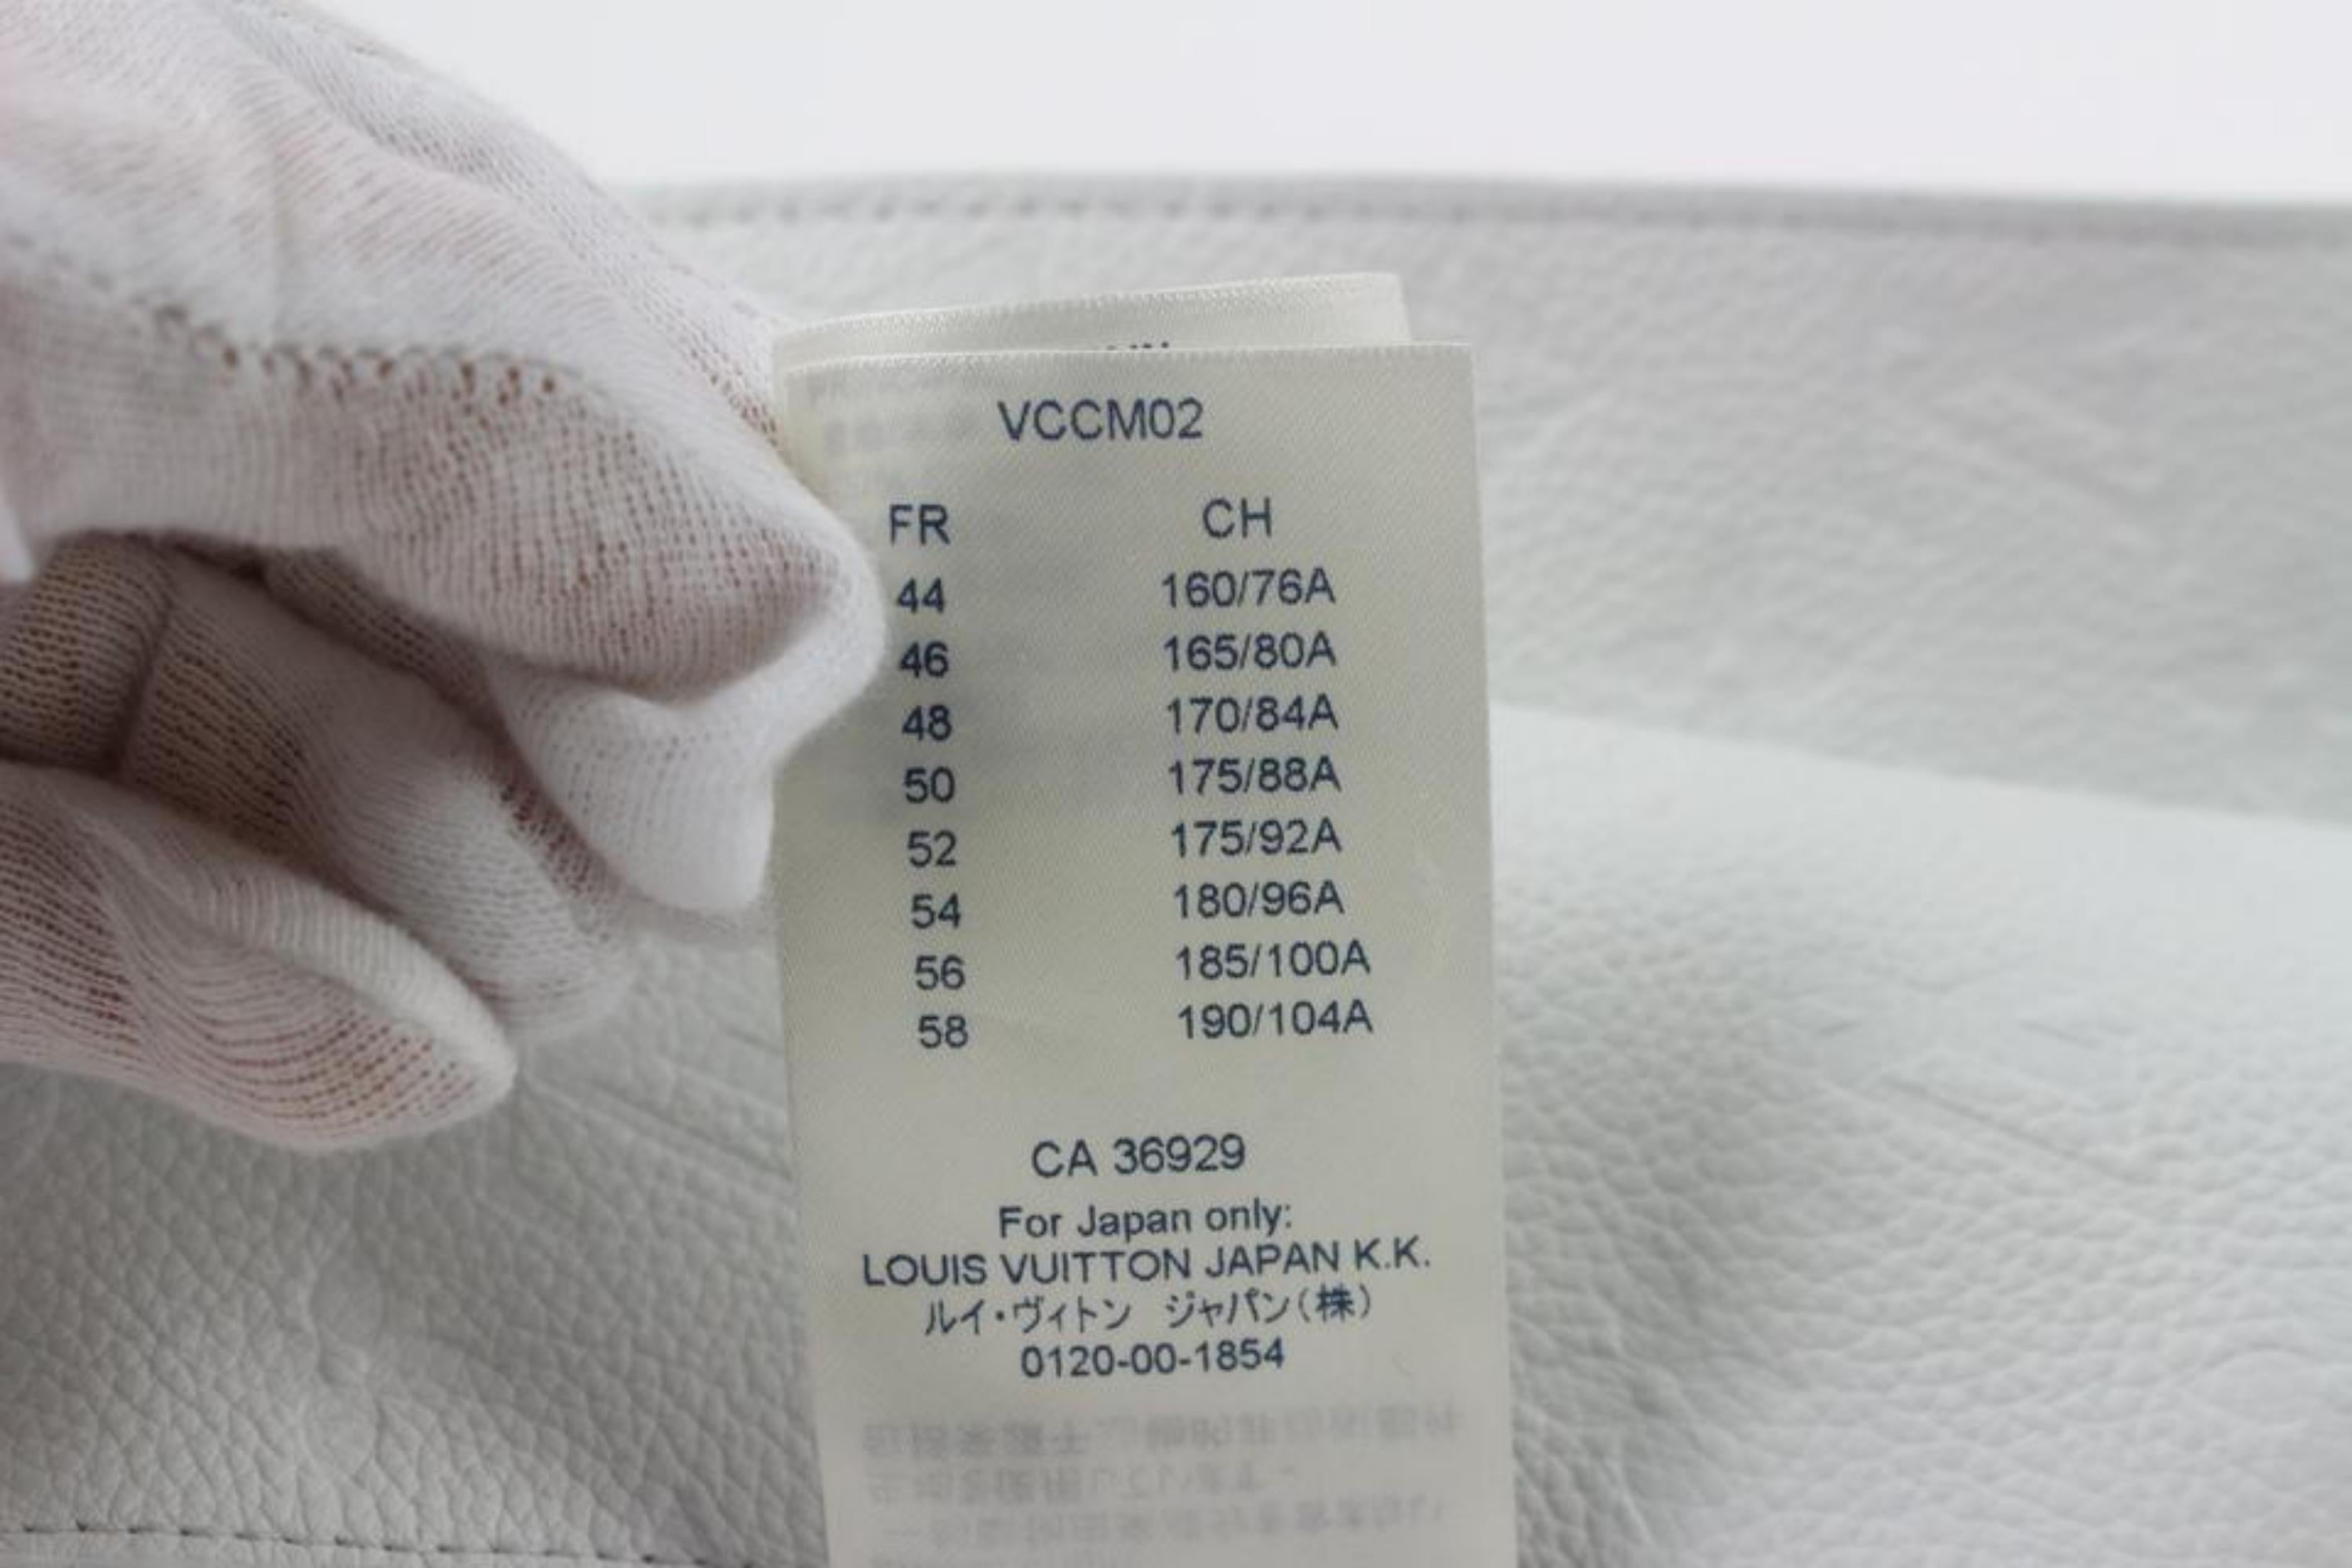 Louis Vuitton Virgil Abloh Empreinte Cut Away Vest 15lz1023 White Backpack For Sale 4